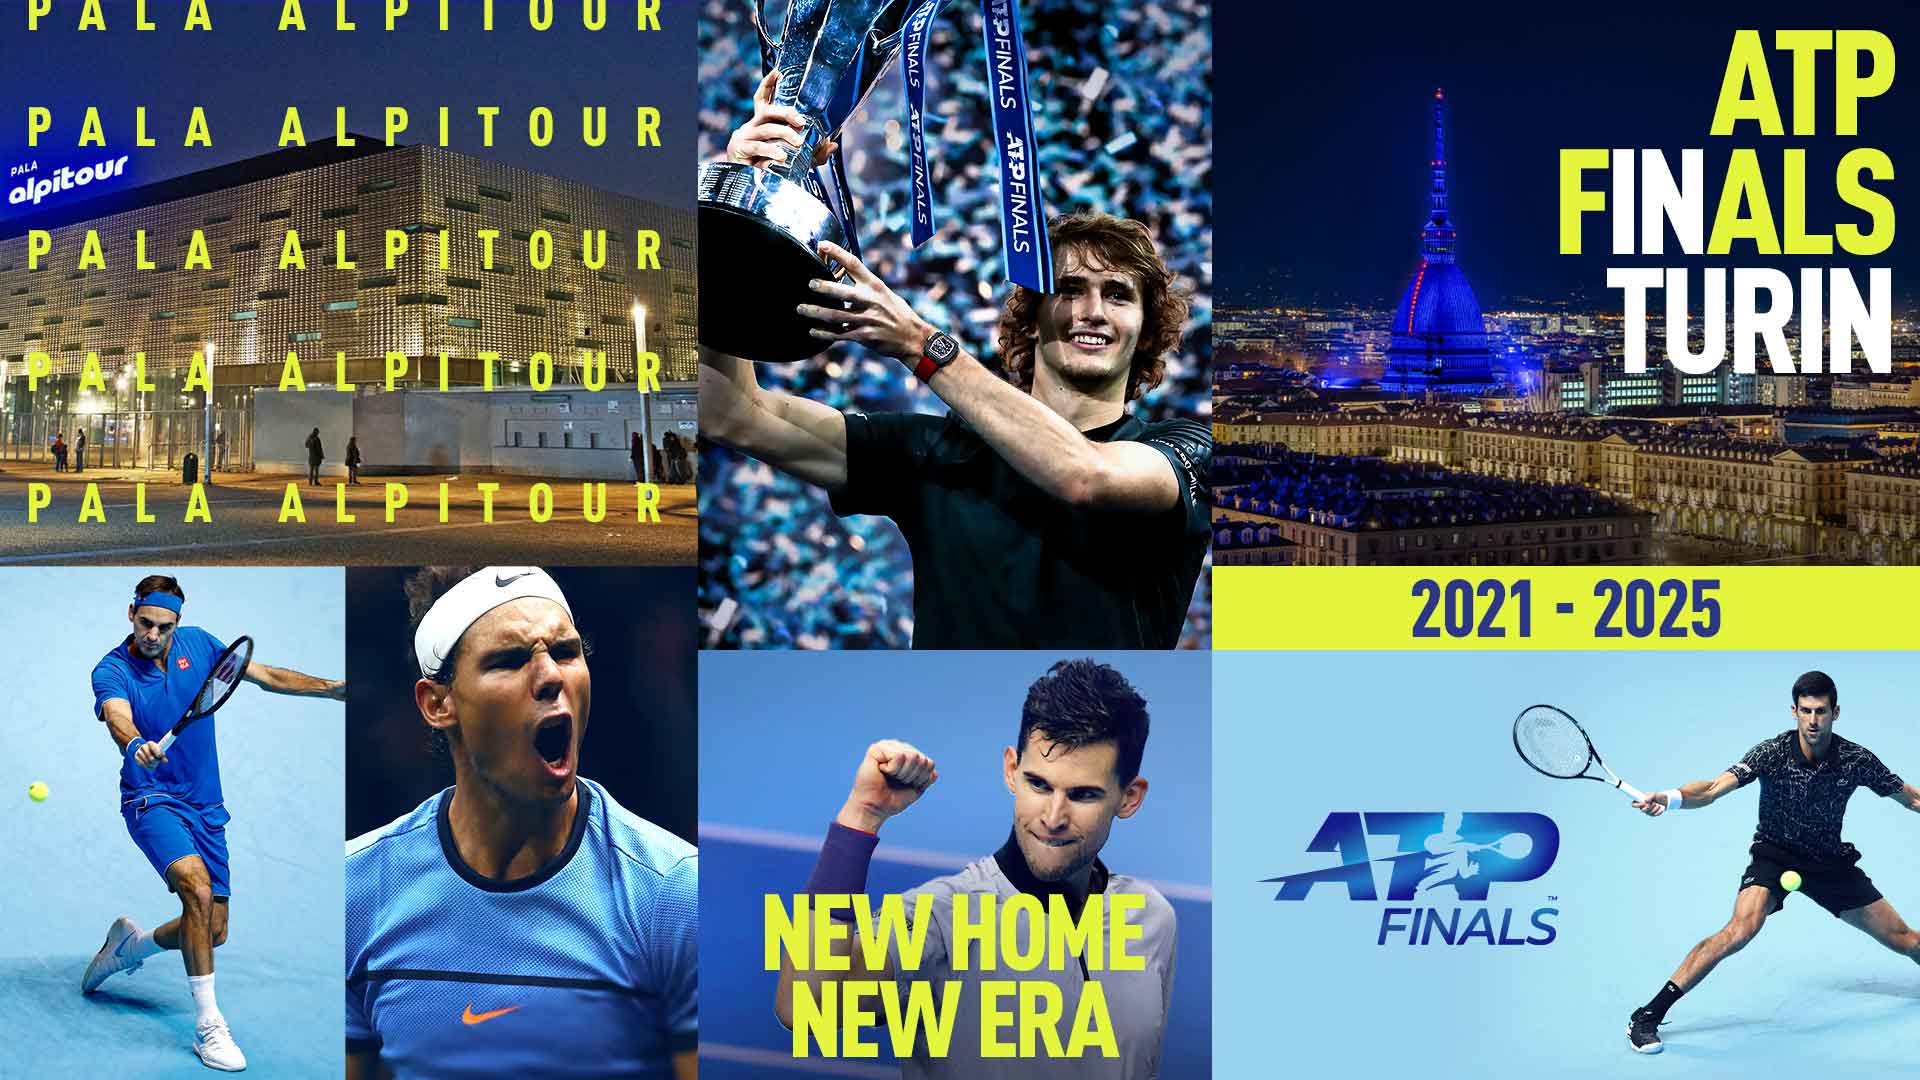 Quando será o próximo torneio ATP de tênis no Brasil ? - Tenis News